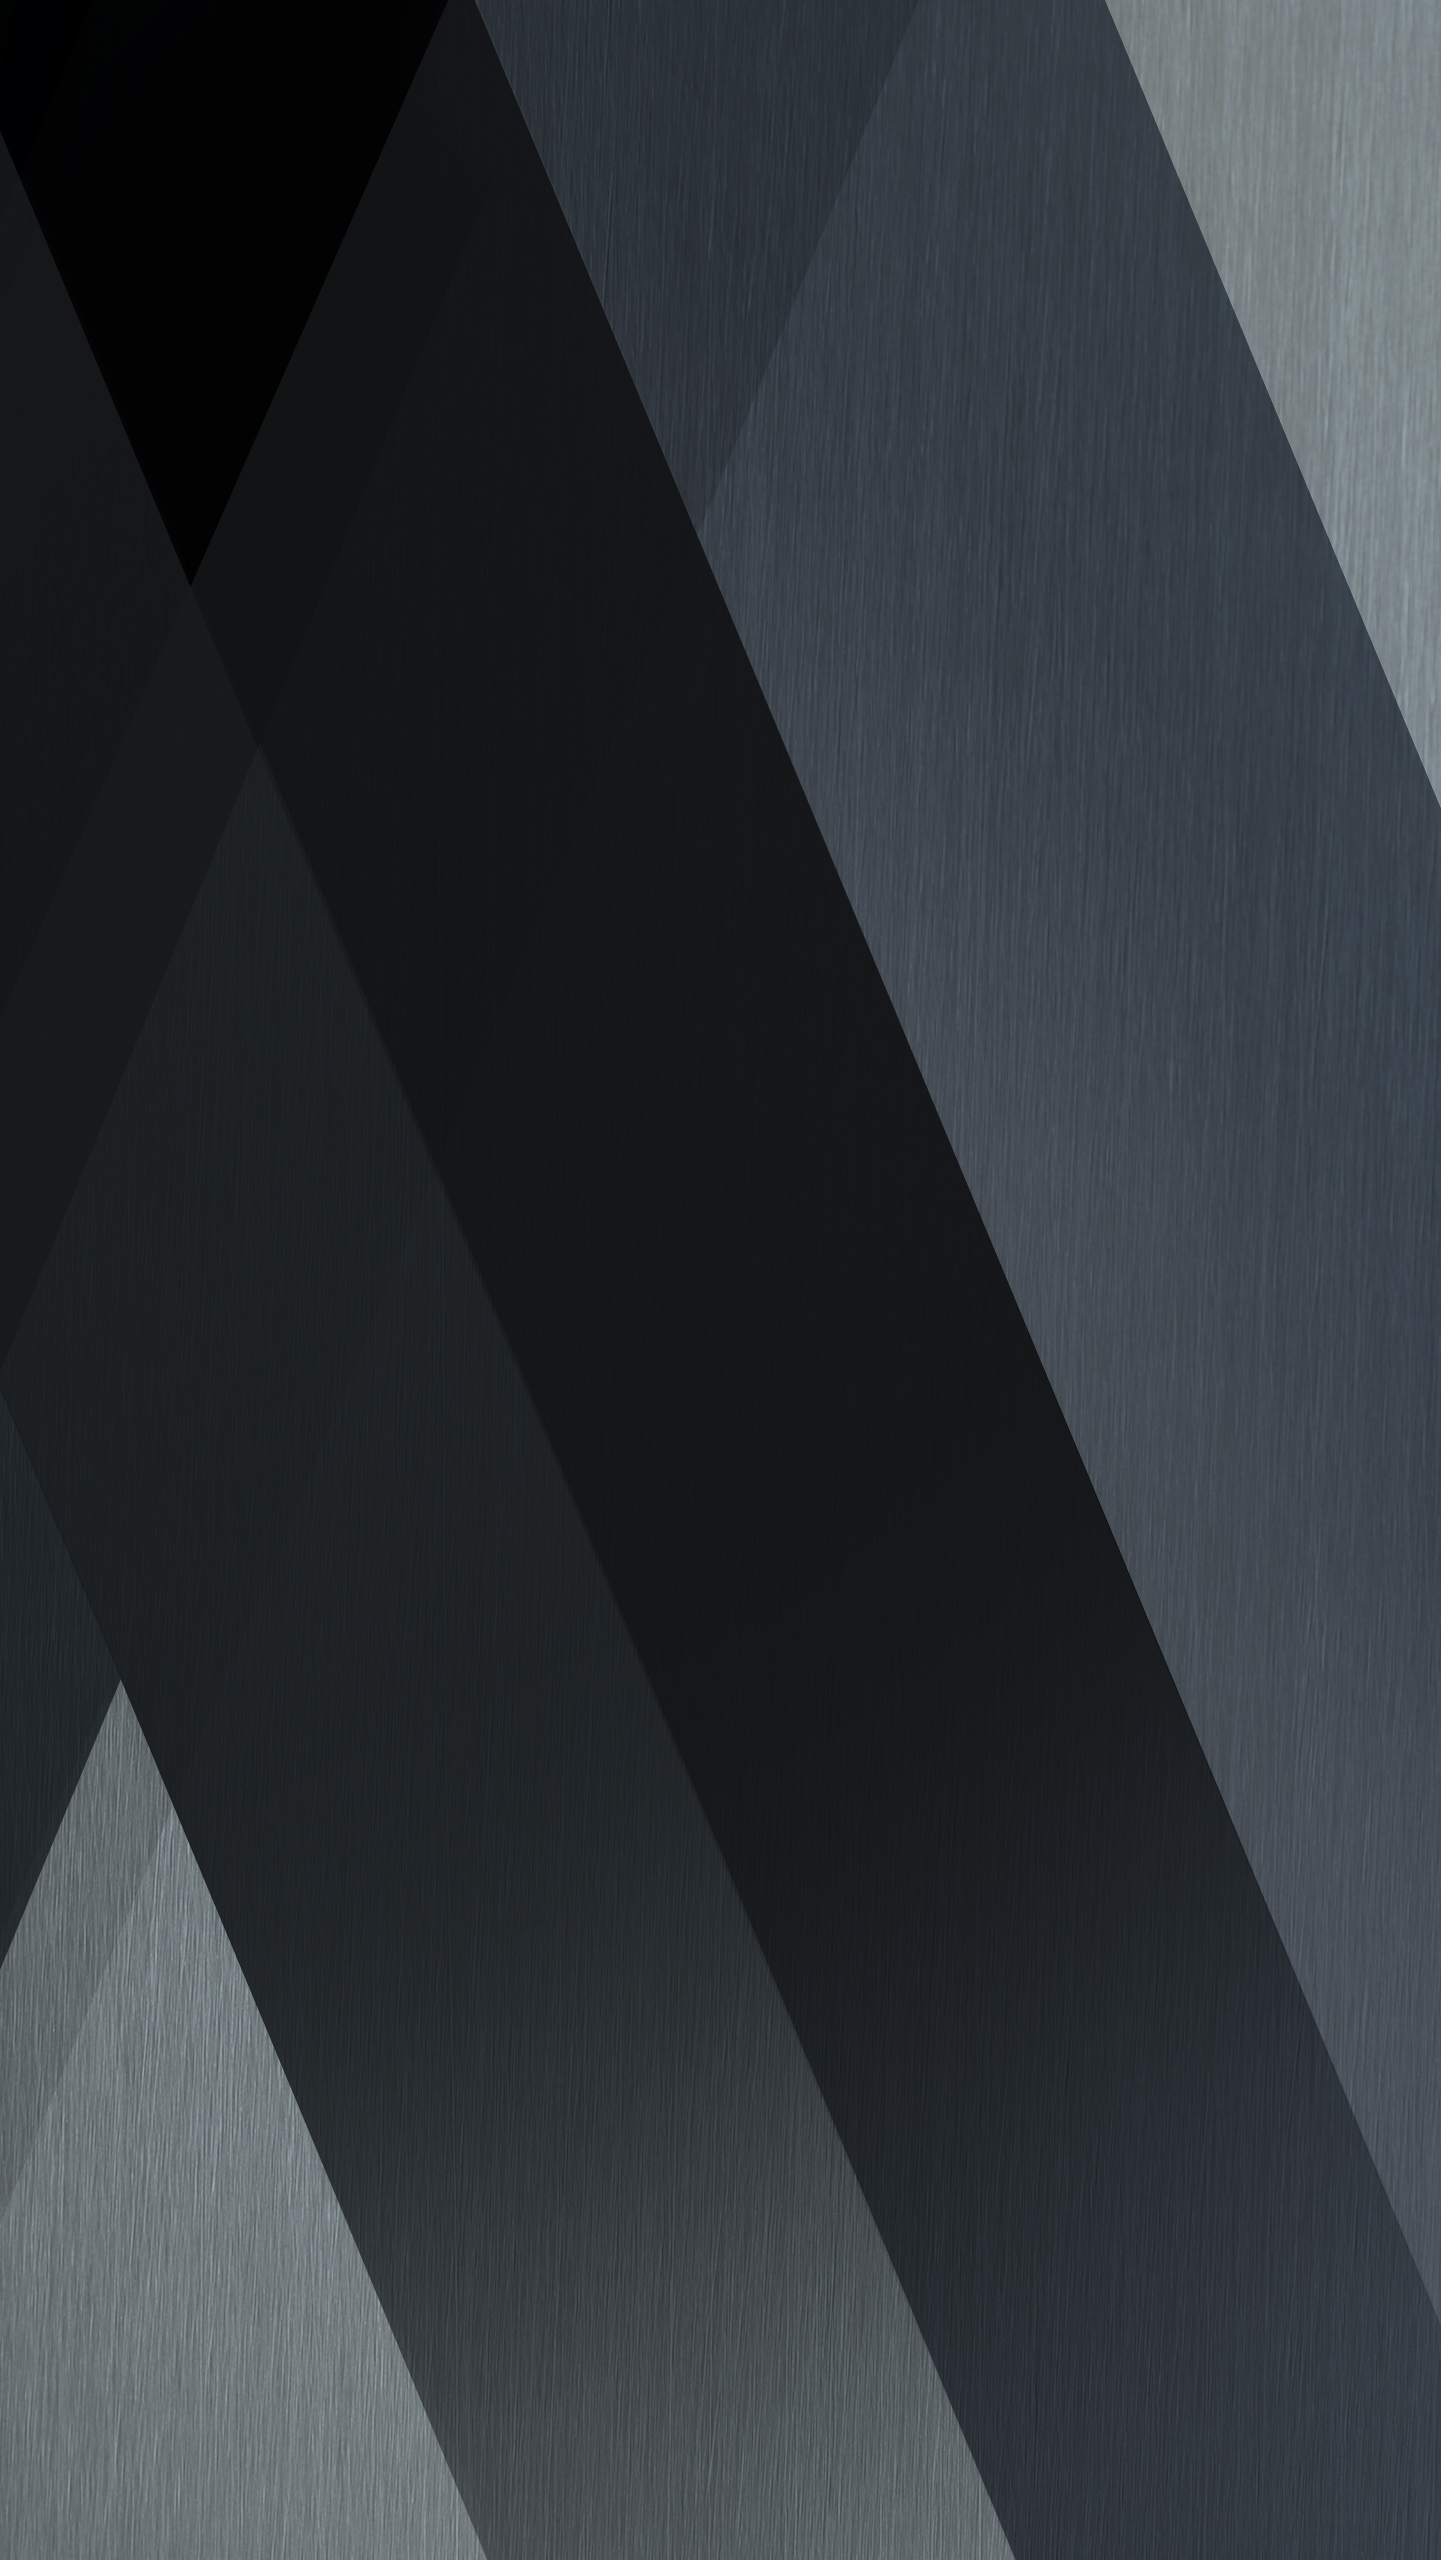 sfondo di lg v20,nero,linea,architettura,font,bianco e nero